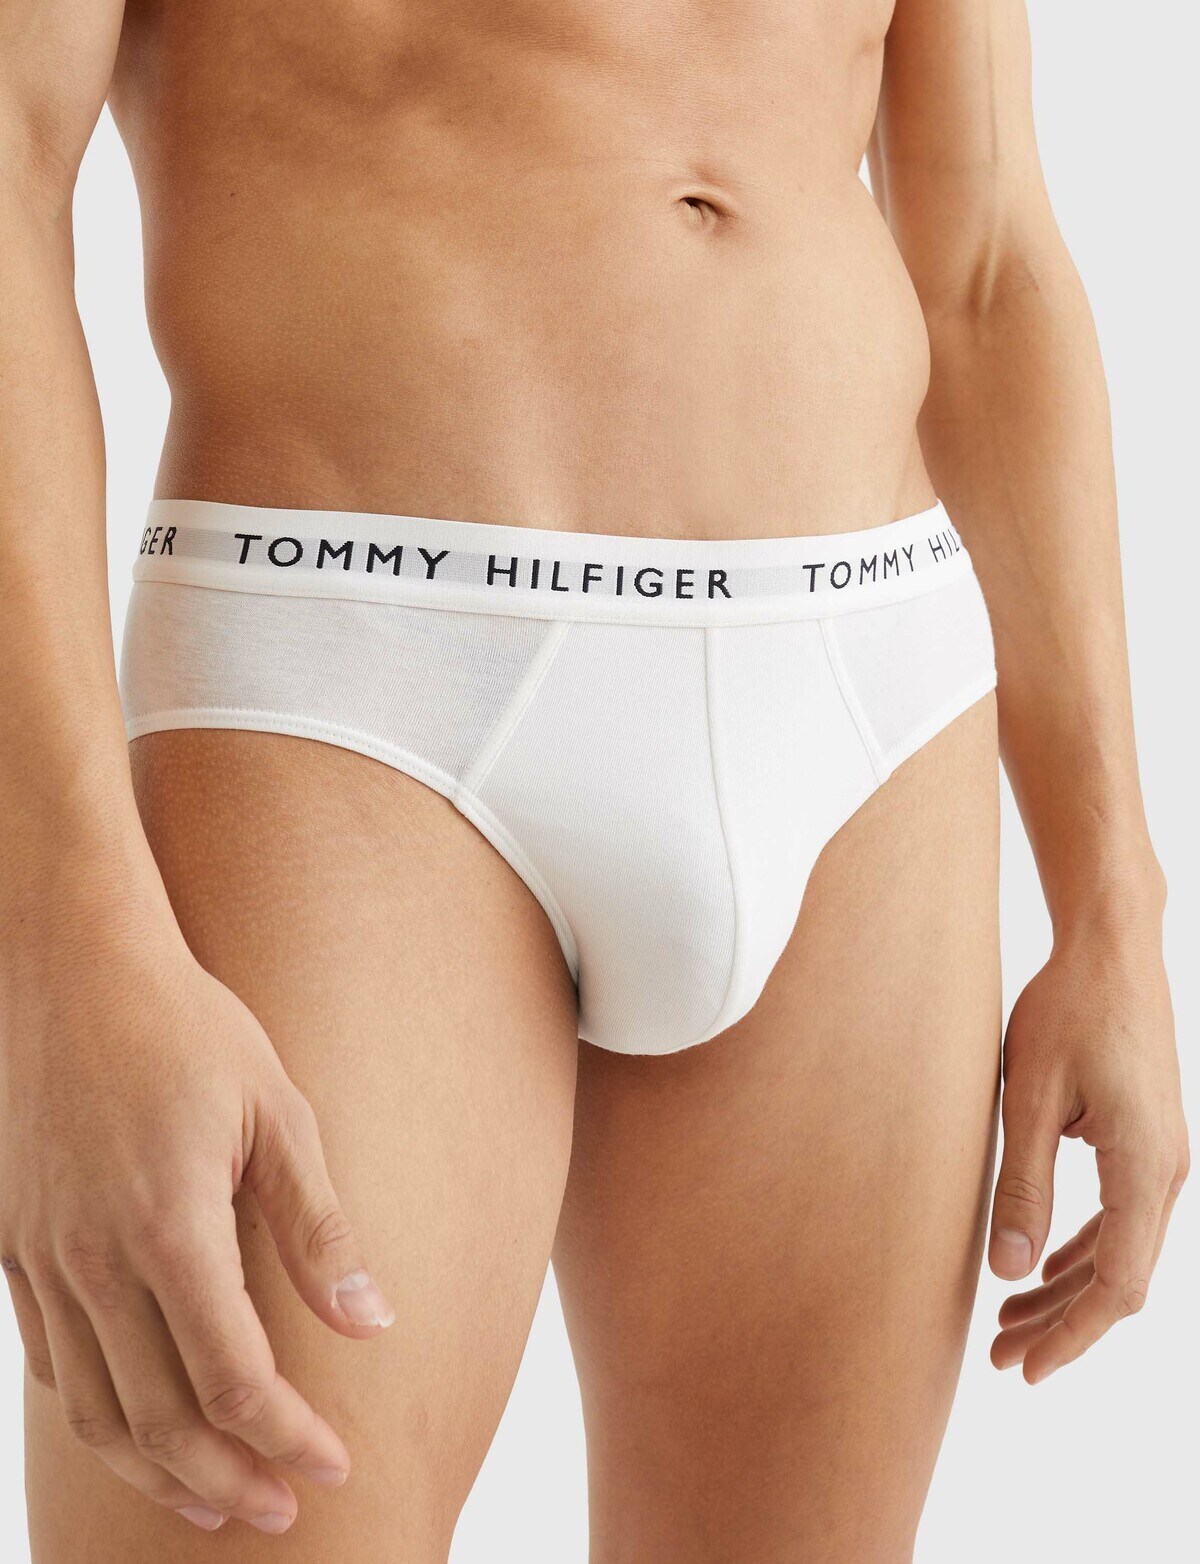 Tommy Hilfiger Brief, 3-Pack, Black, Grey & White - Underwear